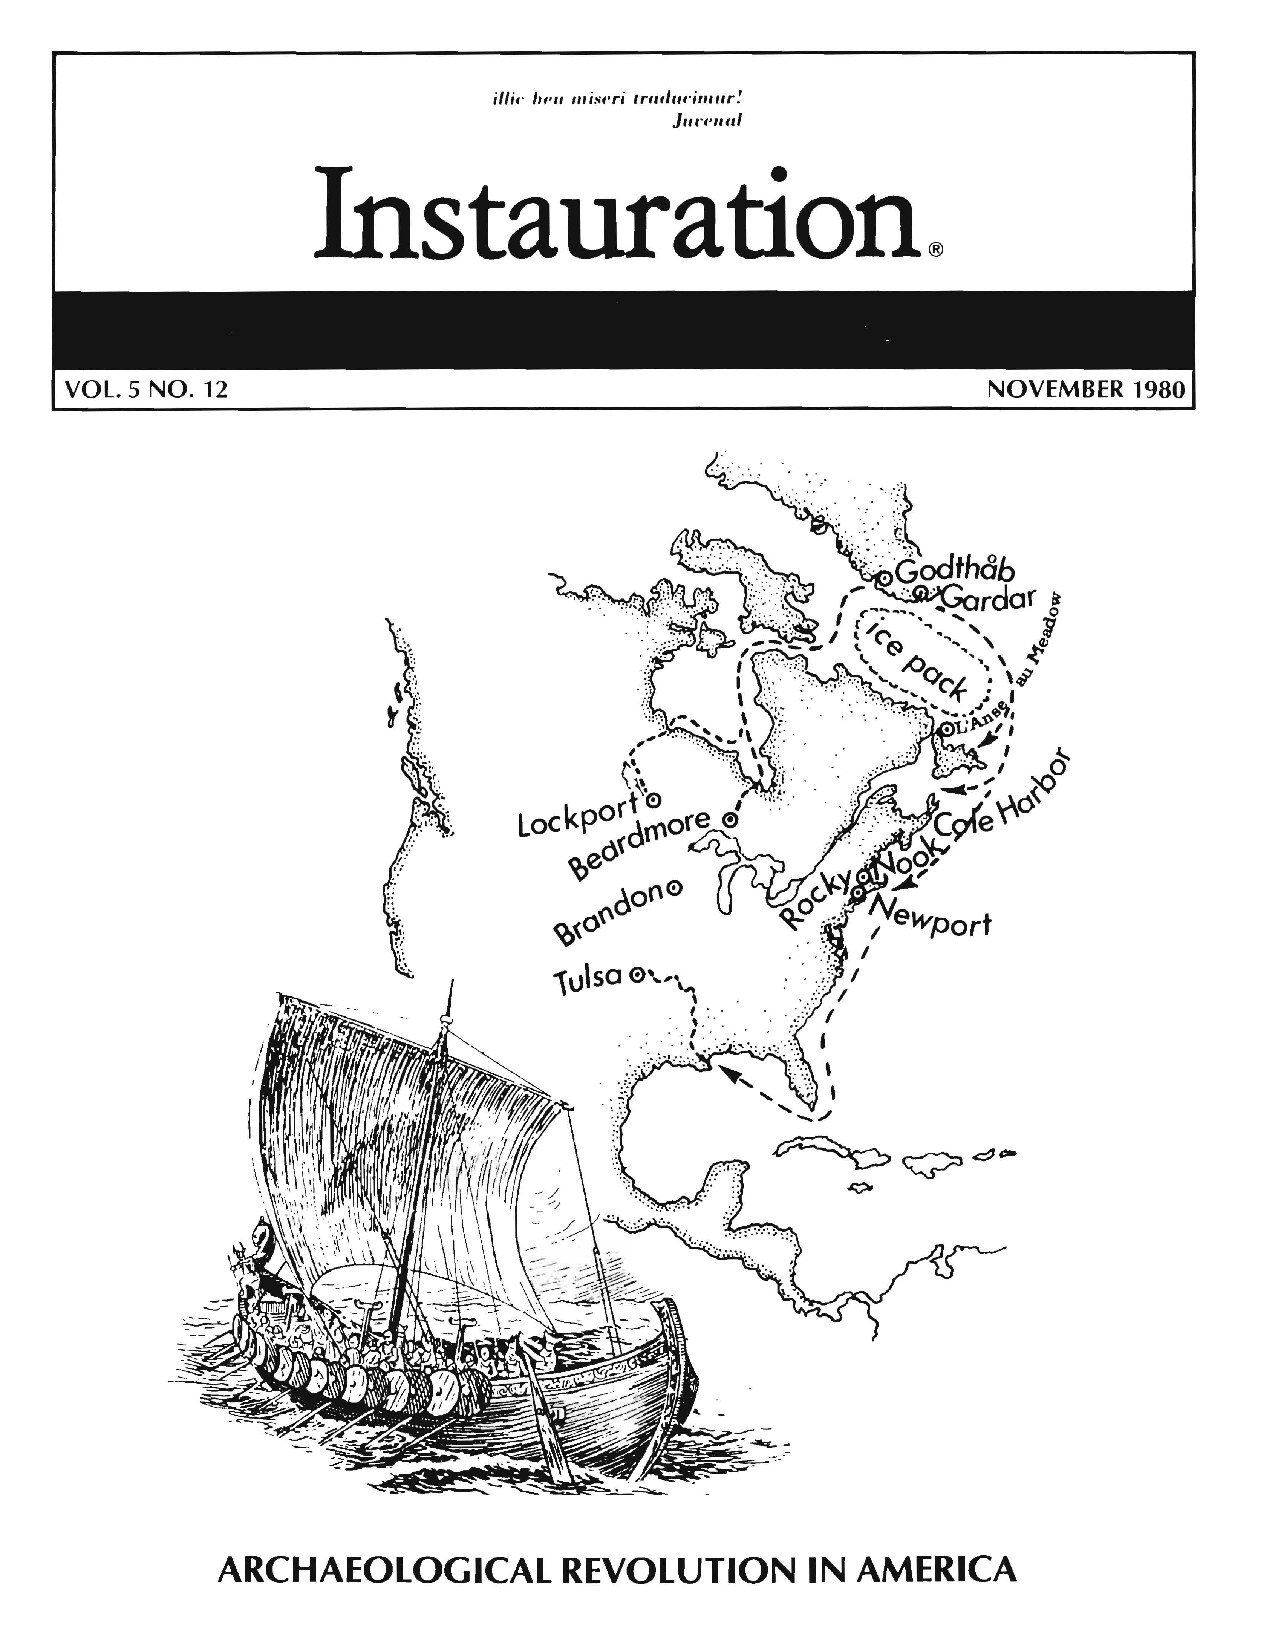 Instauration-1980-11-November-Vol5-No12